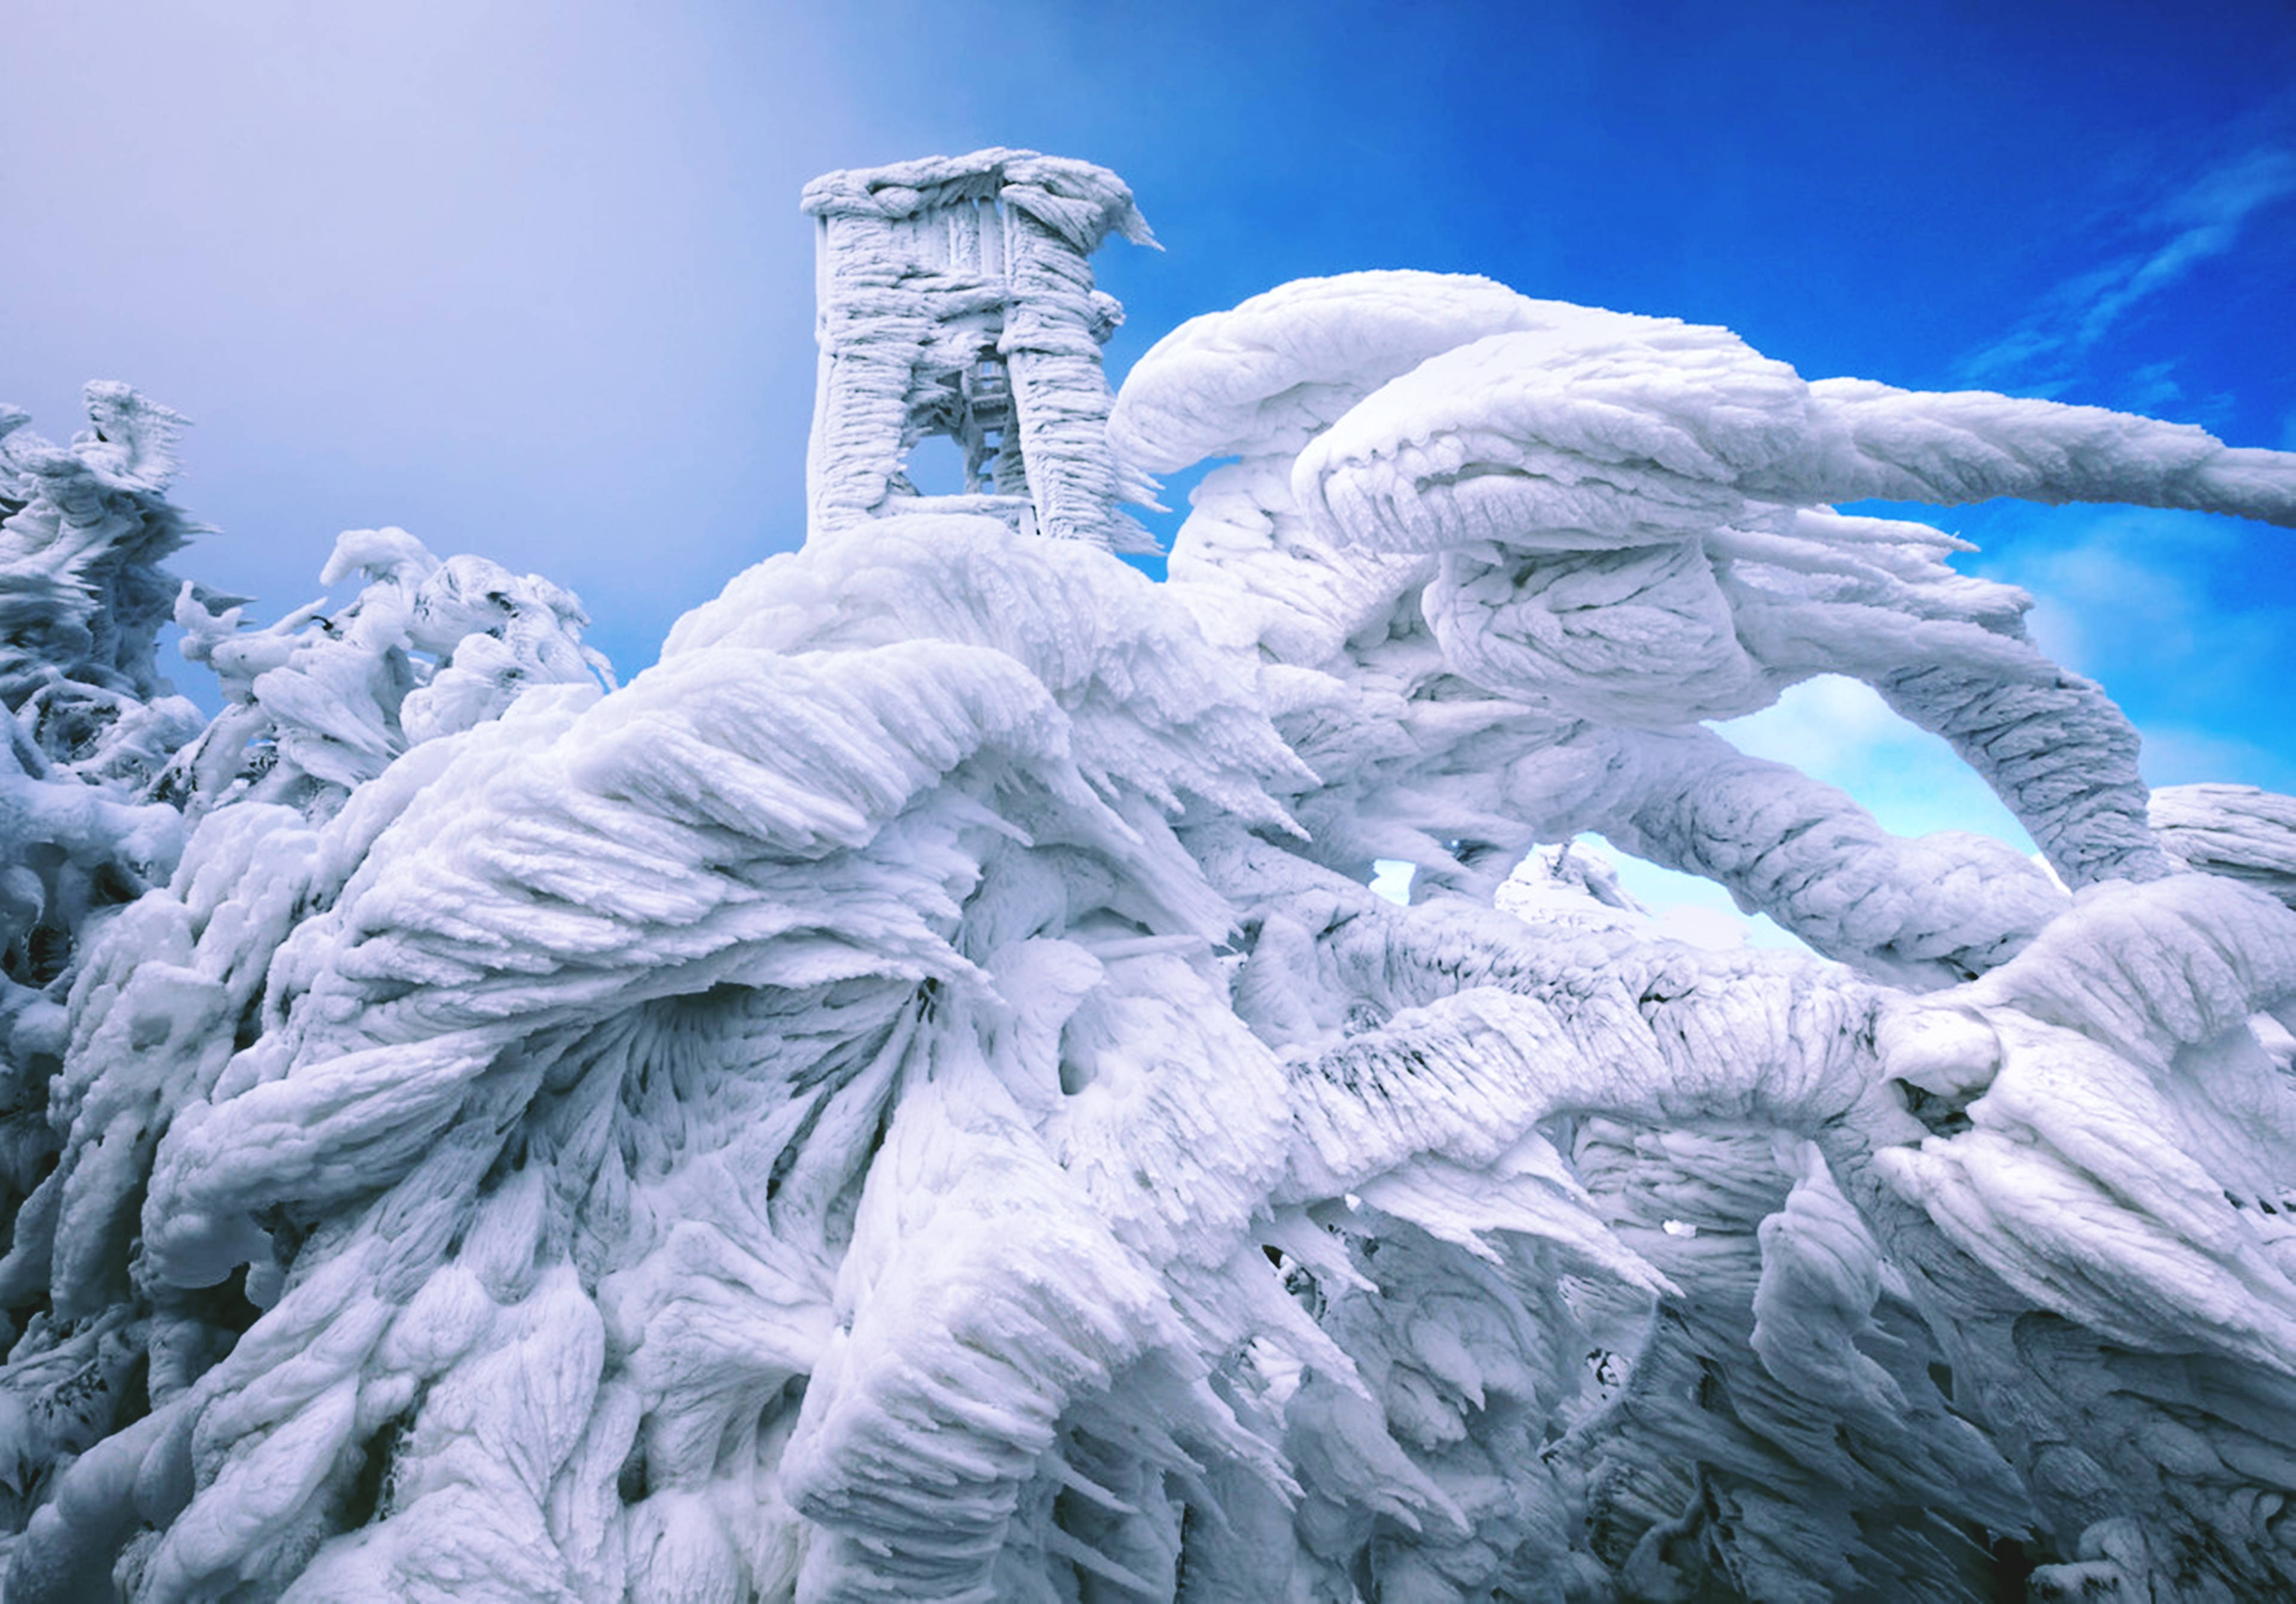 Почти невероятное. Ледяные образования на вершине горы в Словении. Ледяные скульптуры. Необычные фотографии. Шедевры природы.